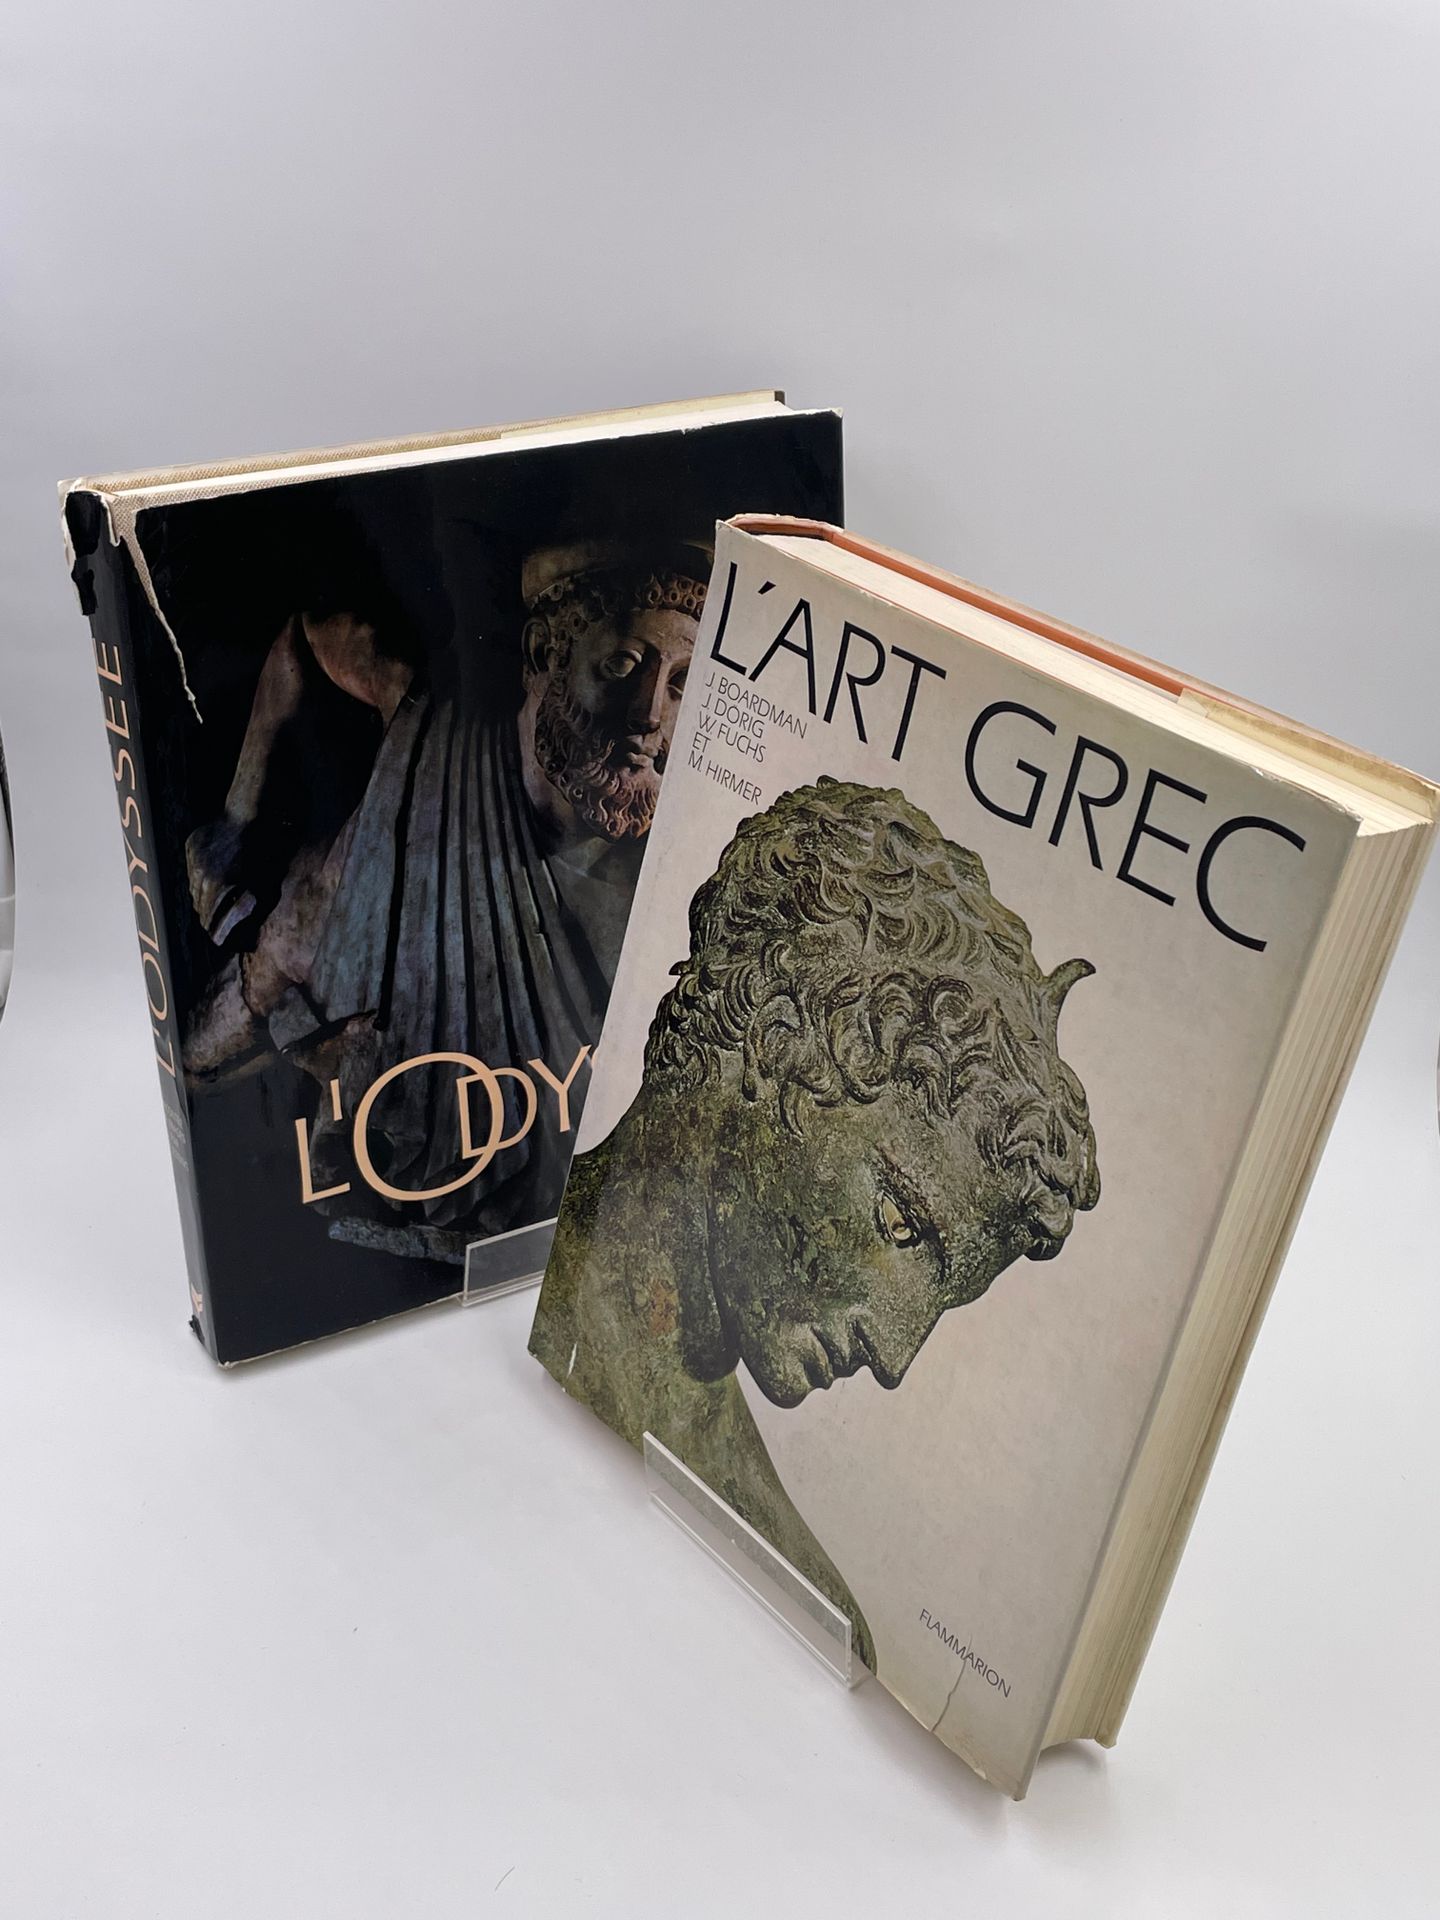 Null 2 volumi: 

- "L'ART GREC" J.Boardman, J.Drig, W Fuchs, M.Hirmer, Edition F&hellip;